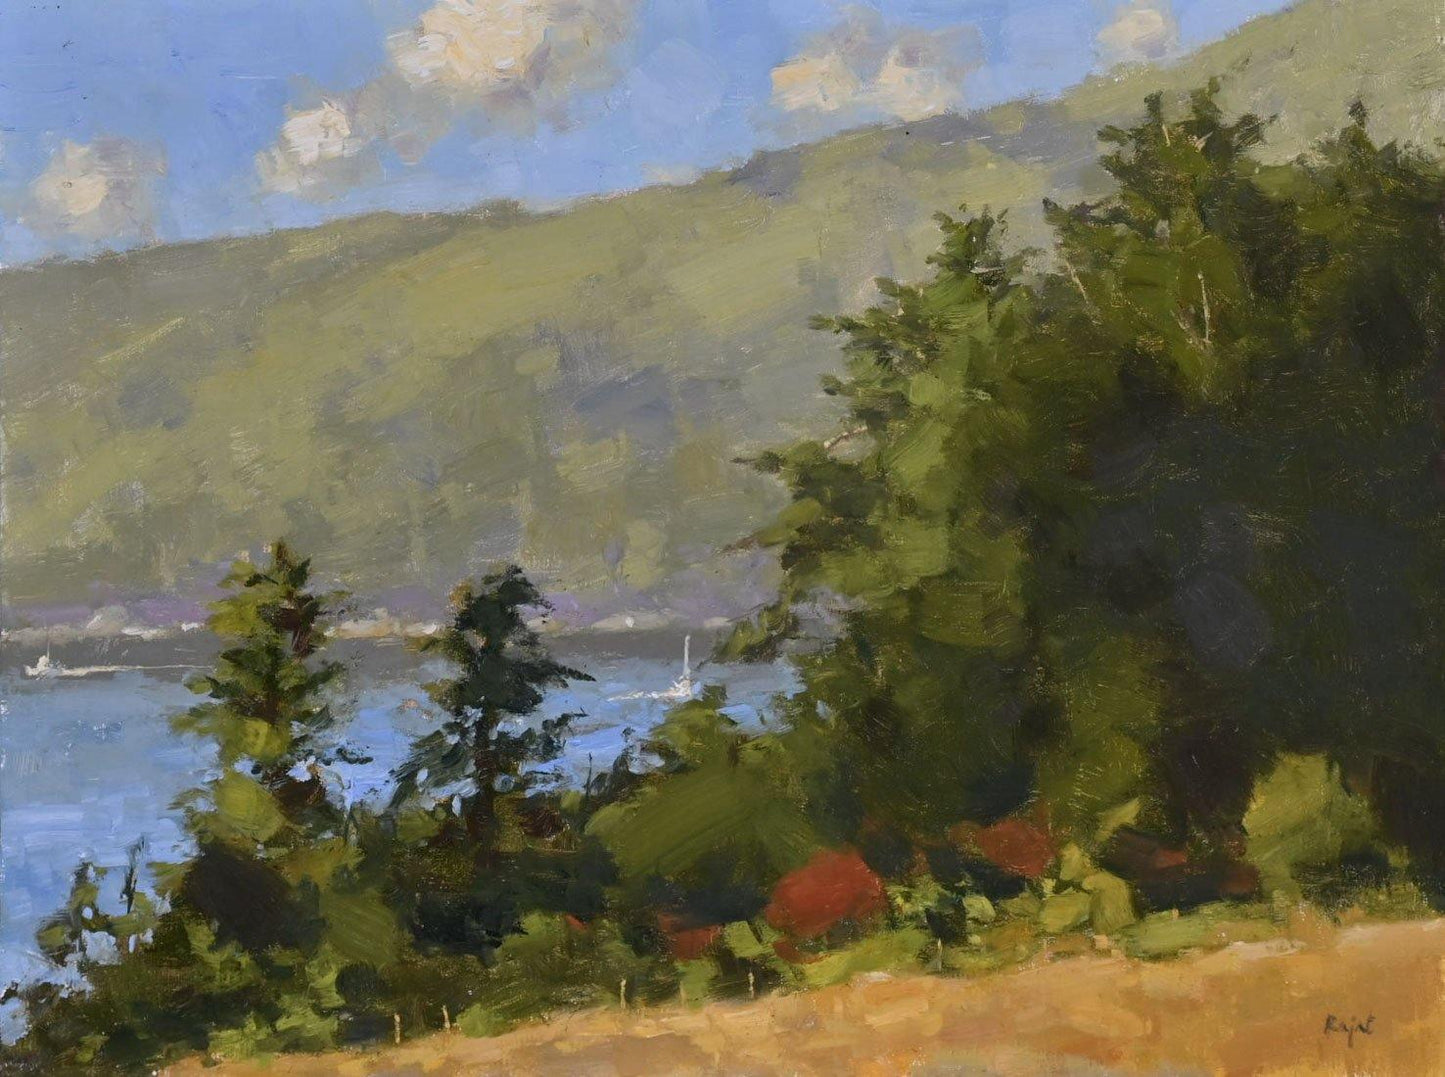 Online Oil Painting Classes - Landscape